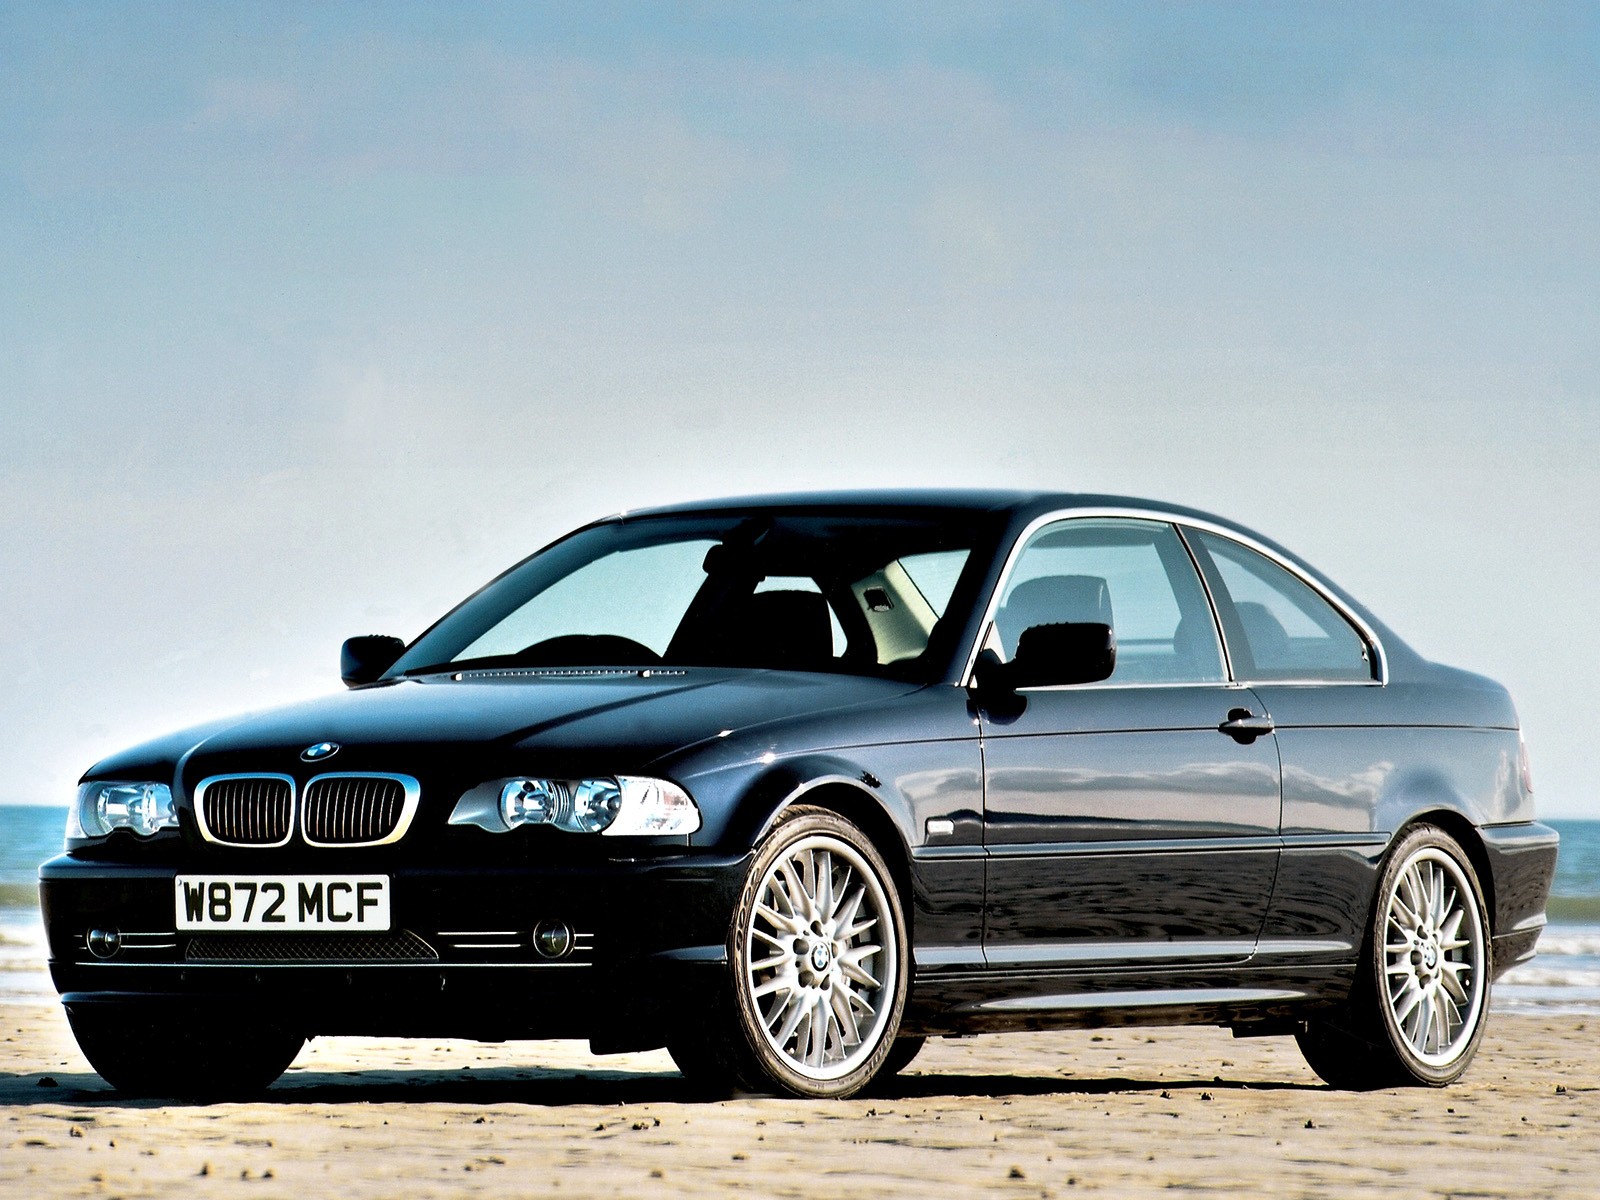 BMW 3 Series Coupe (E46) 1999, 2000, 2001, 2002, 2003